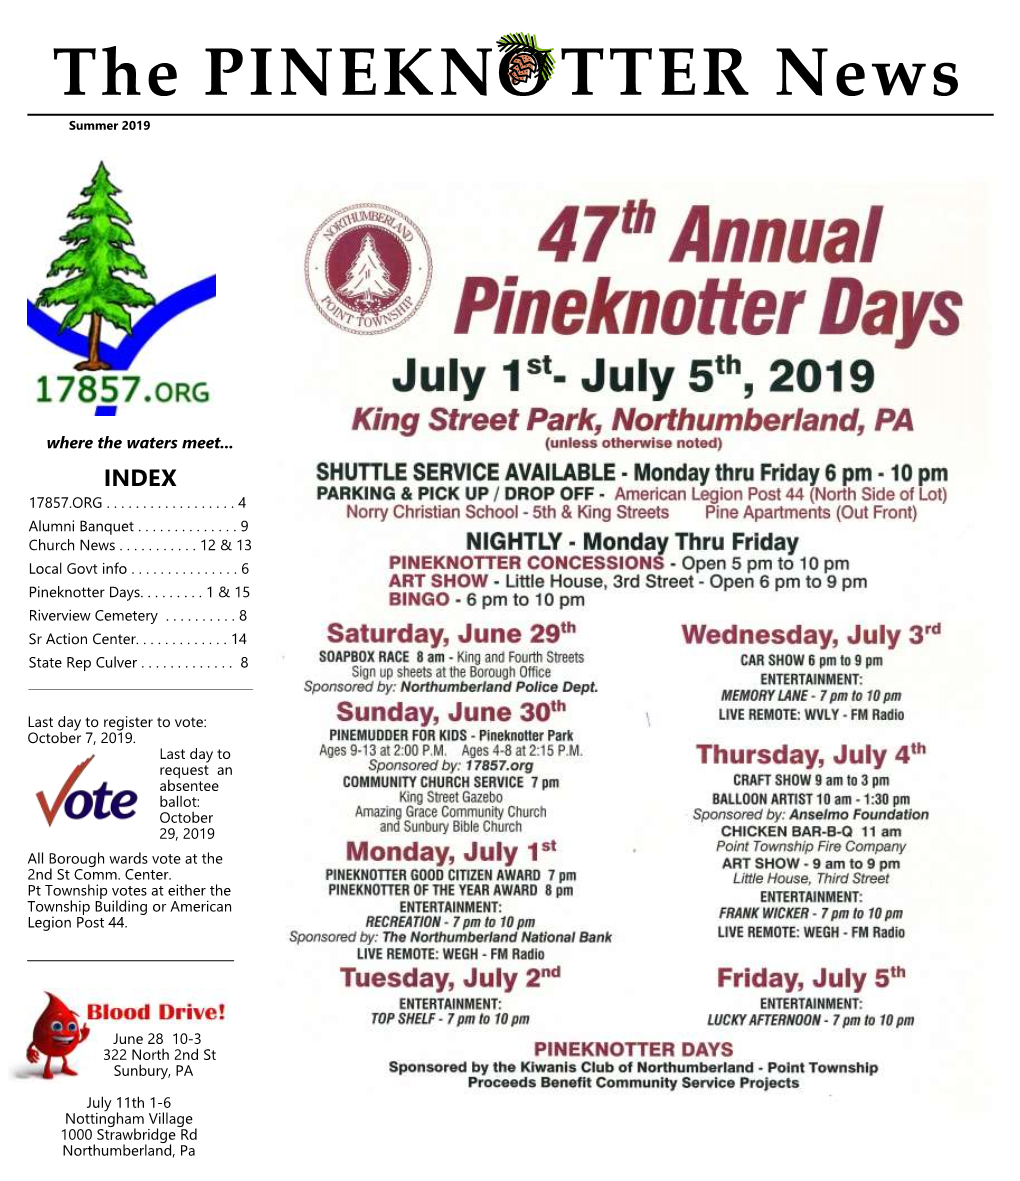 The PINEKNOTTER News Summer 2019